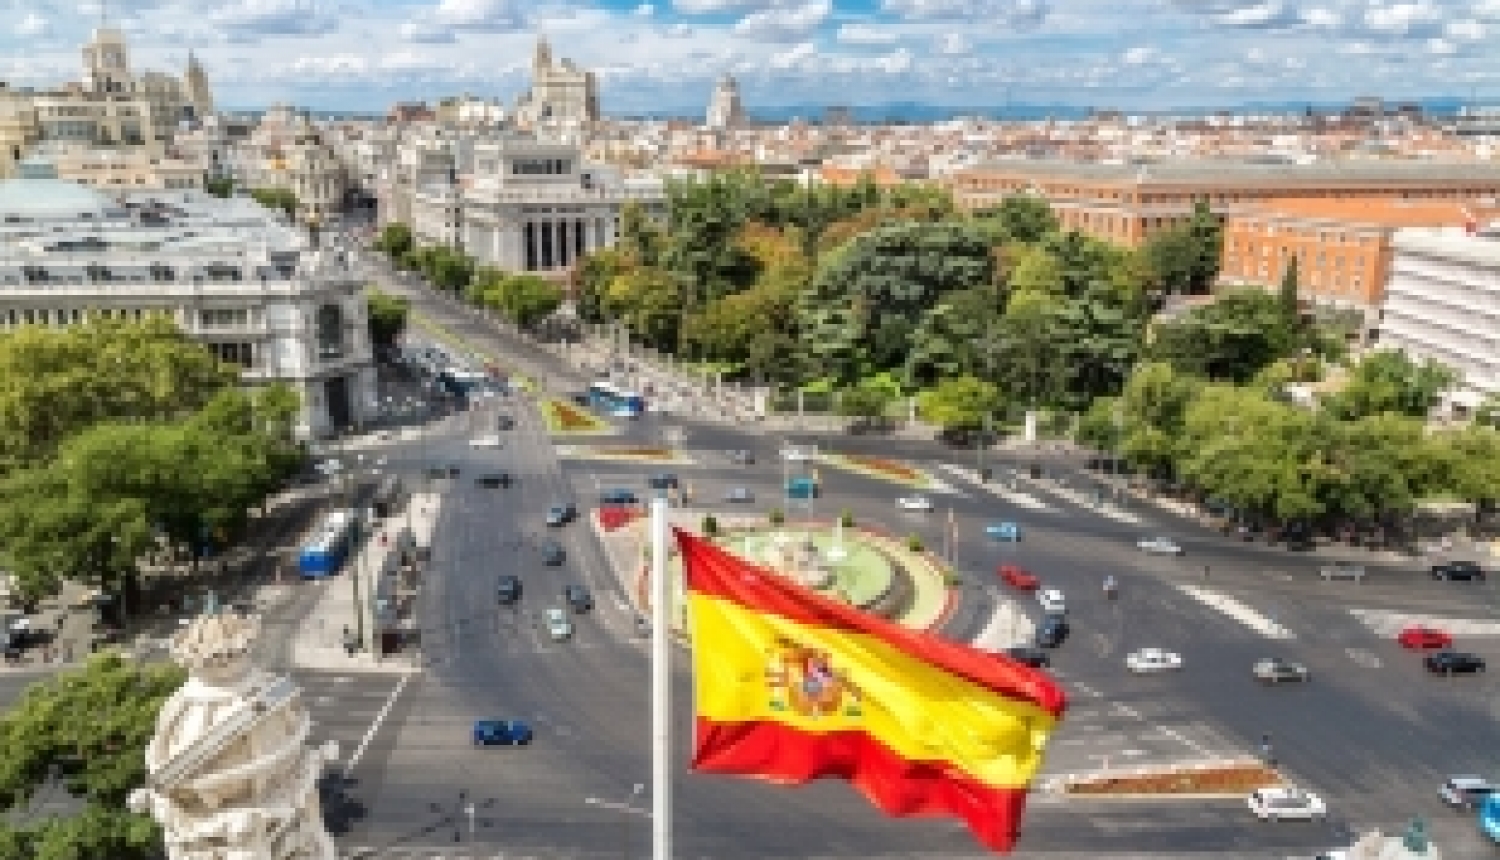 Turpinās pieteikšanās kontaktsemināram profesionālās izglītības speciālistiem Spānijā